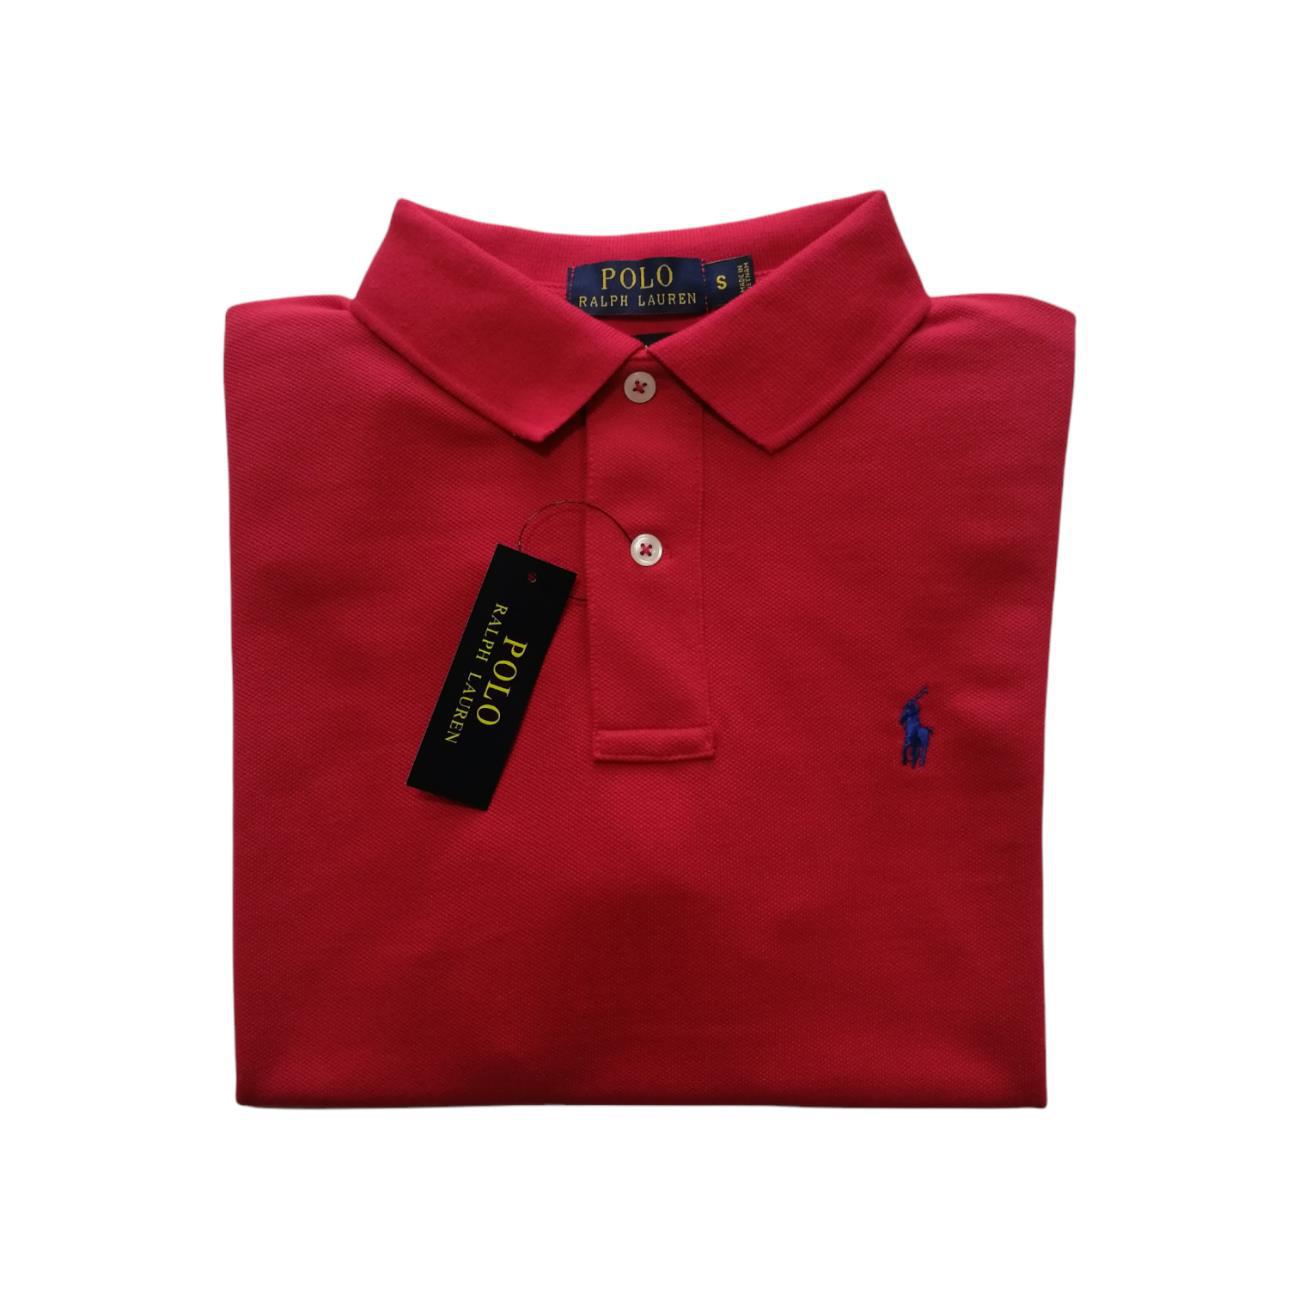 Copia de Camiseta tipo polo manga corta color rojo Polo Ralph Lauren